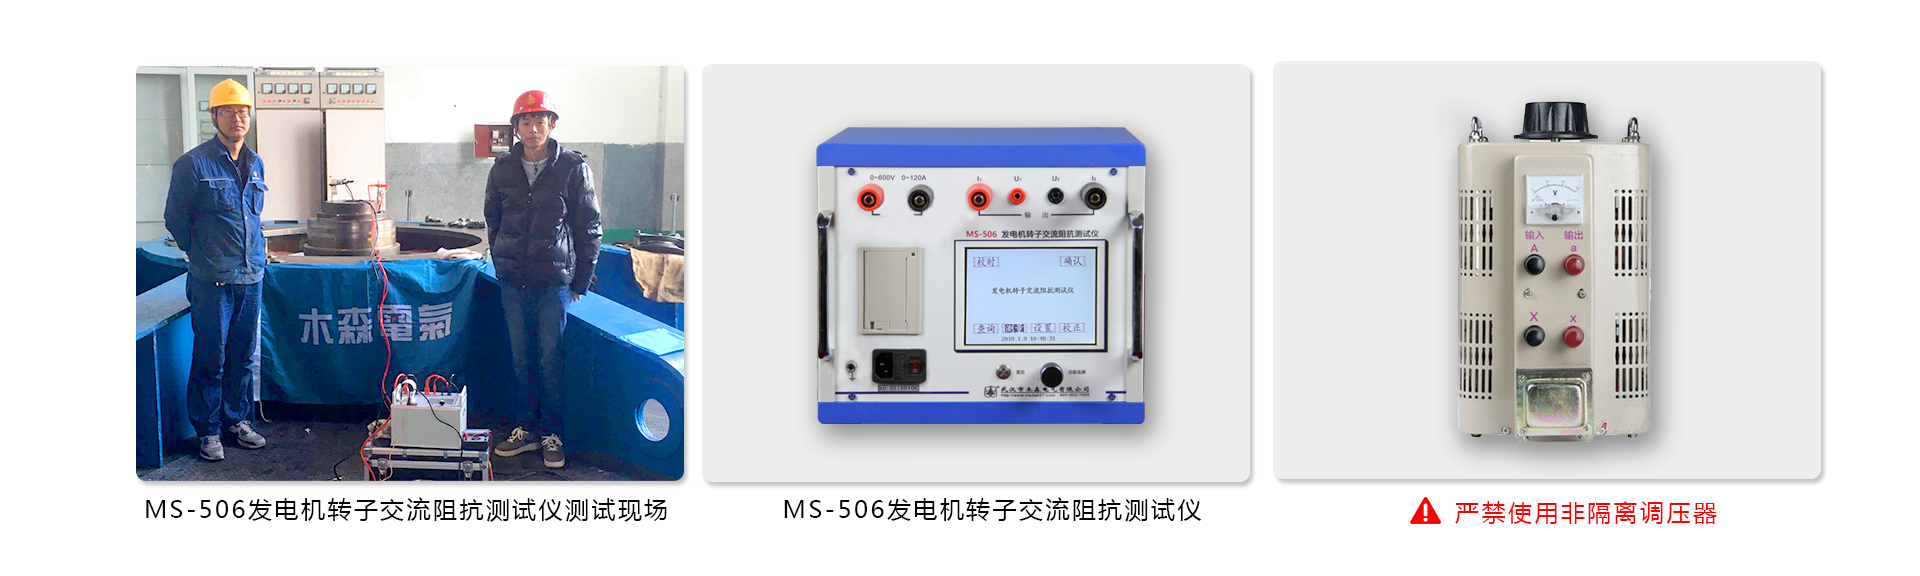 MS-506A发电机转子阻抗测试仪